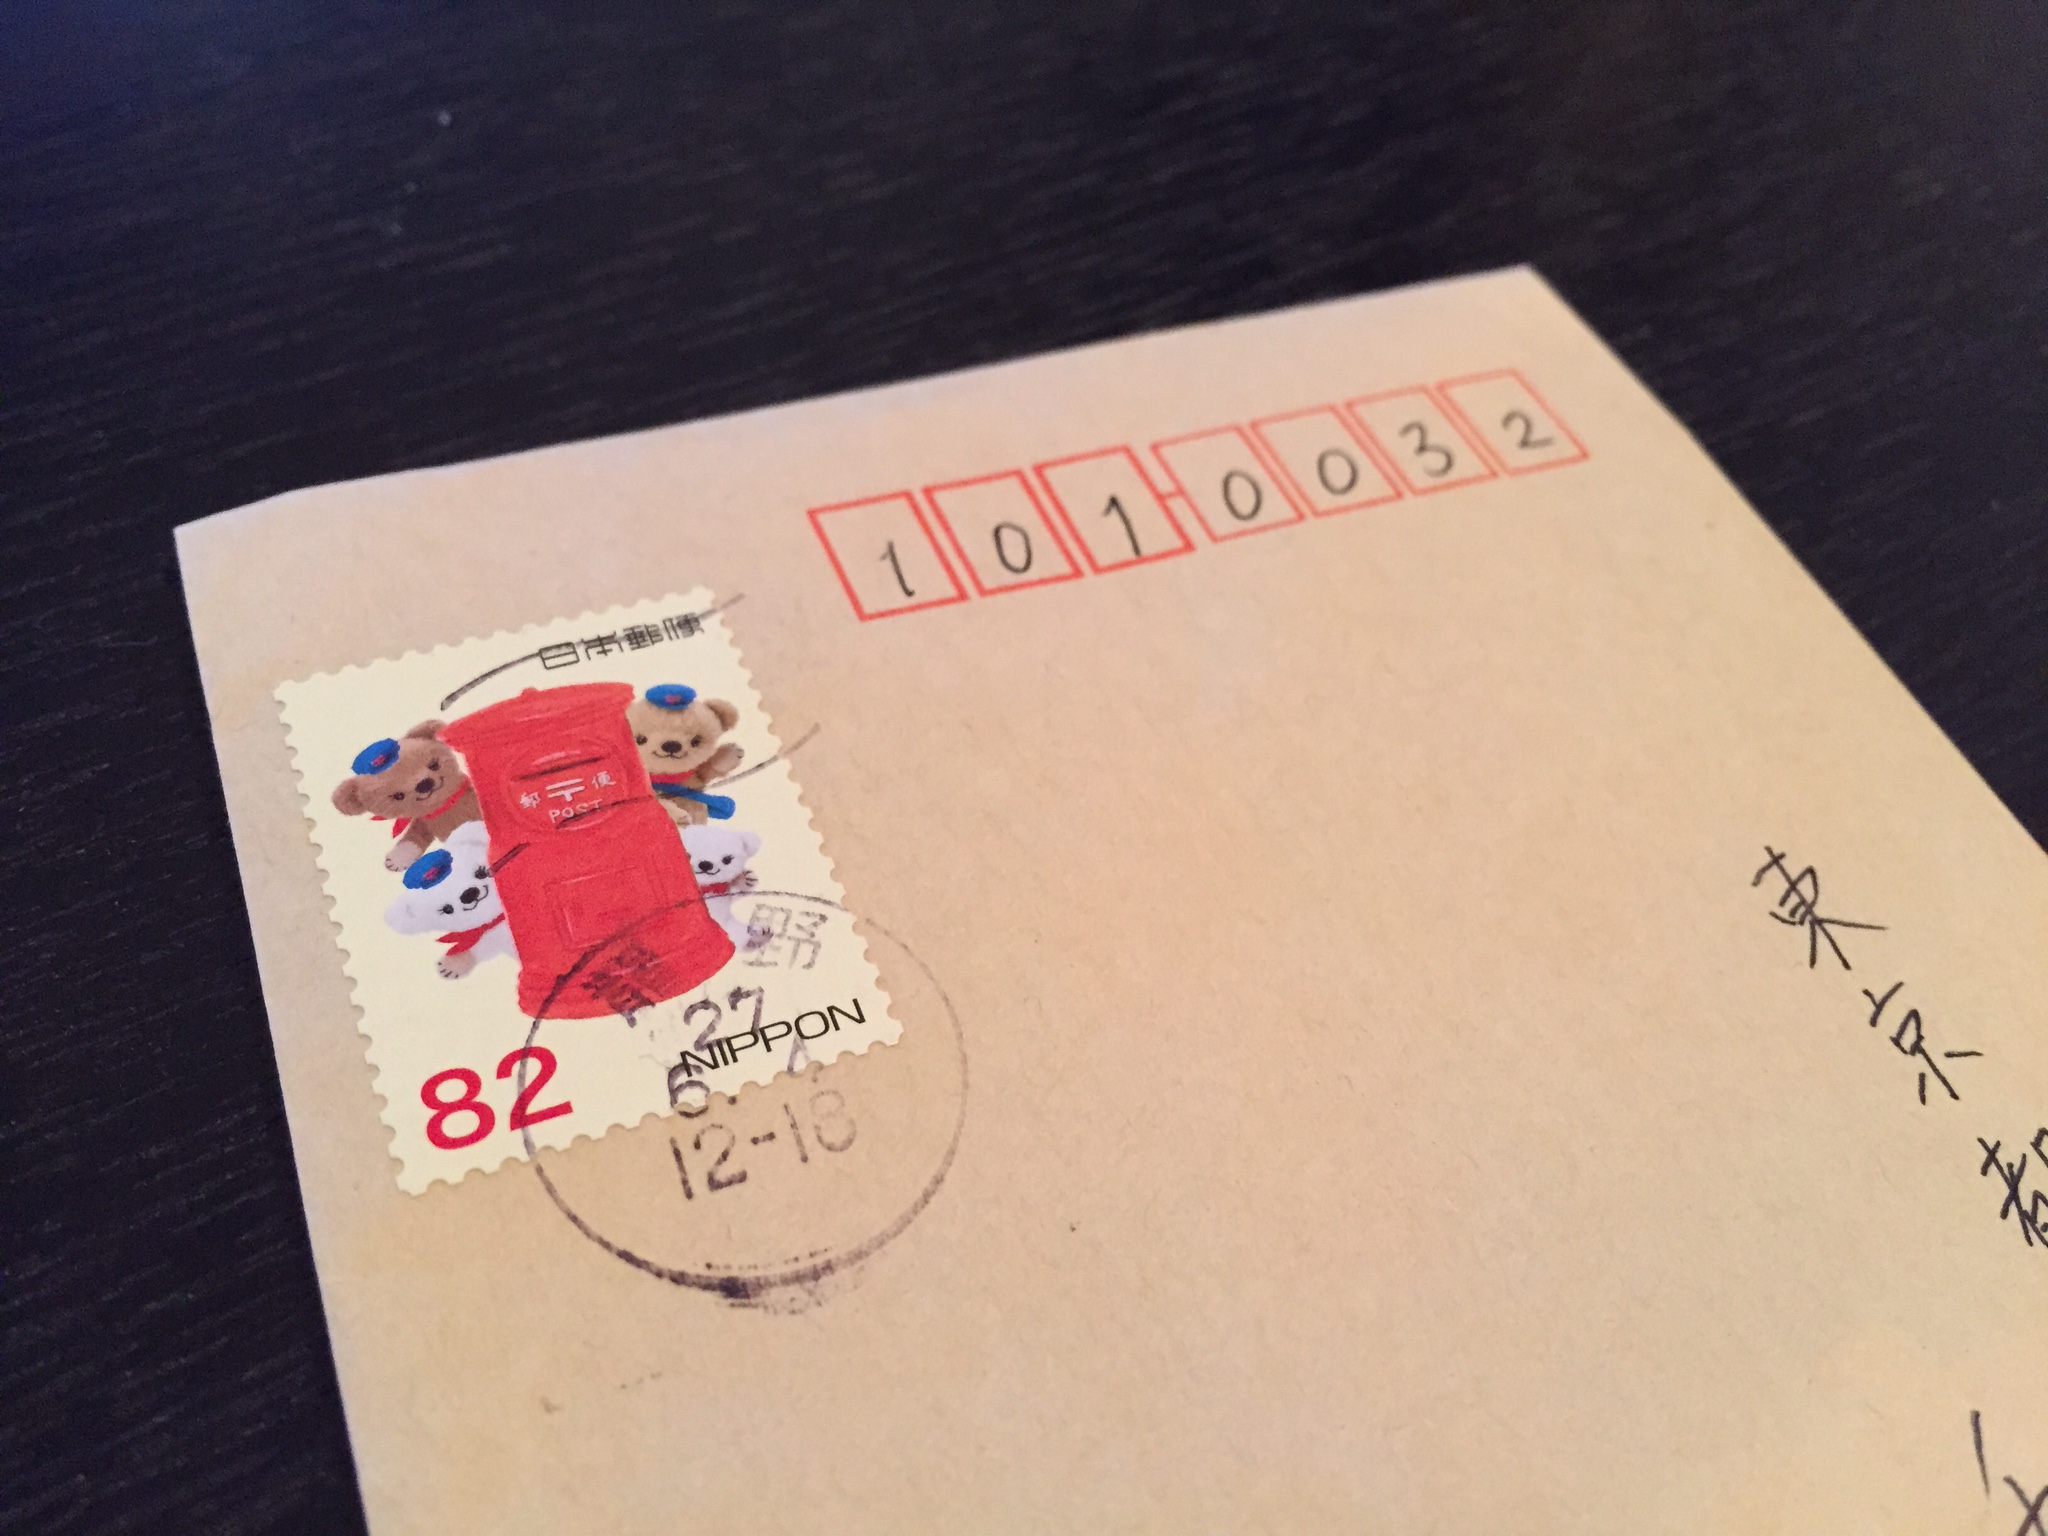 普通郵便に切手を貼ってポストに投函して出す方法 | トリセド